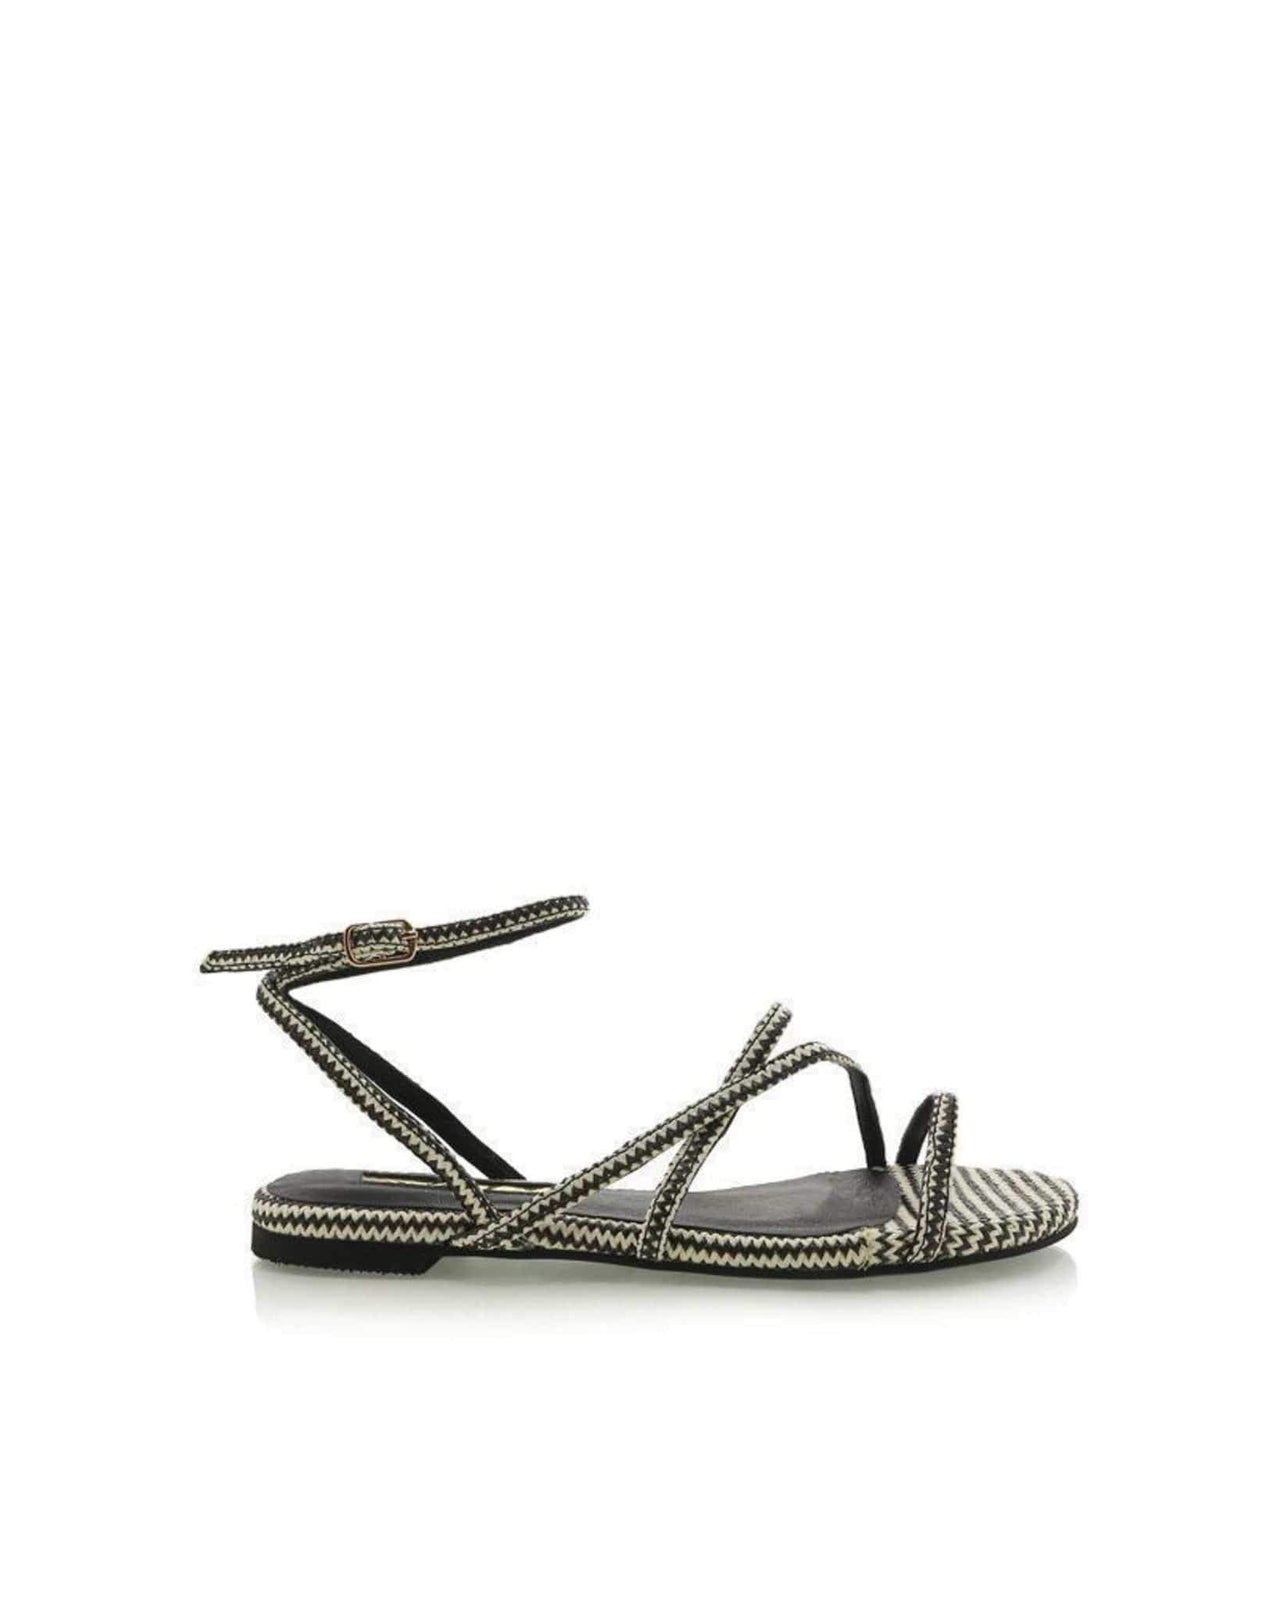 Denver Zigzag Sandal Black and White, Flat Shoe by Billini | LIT Boutique